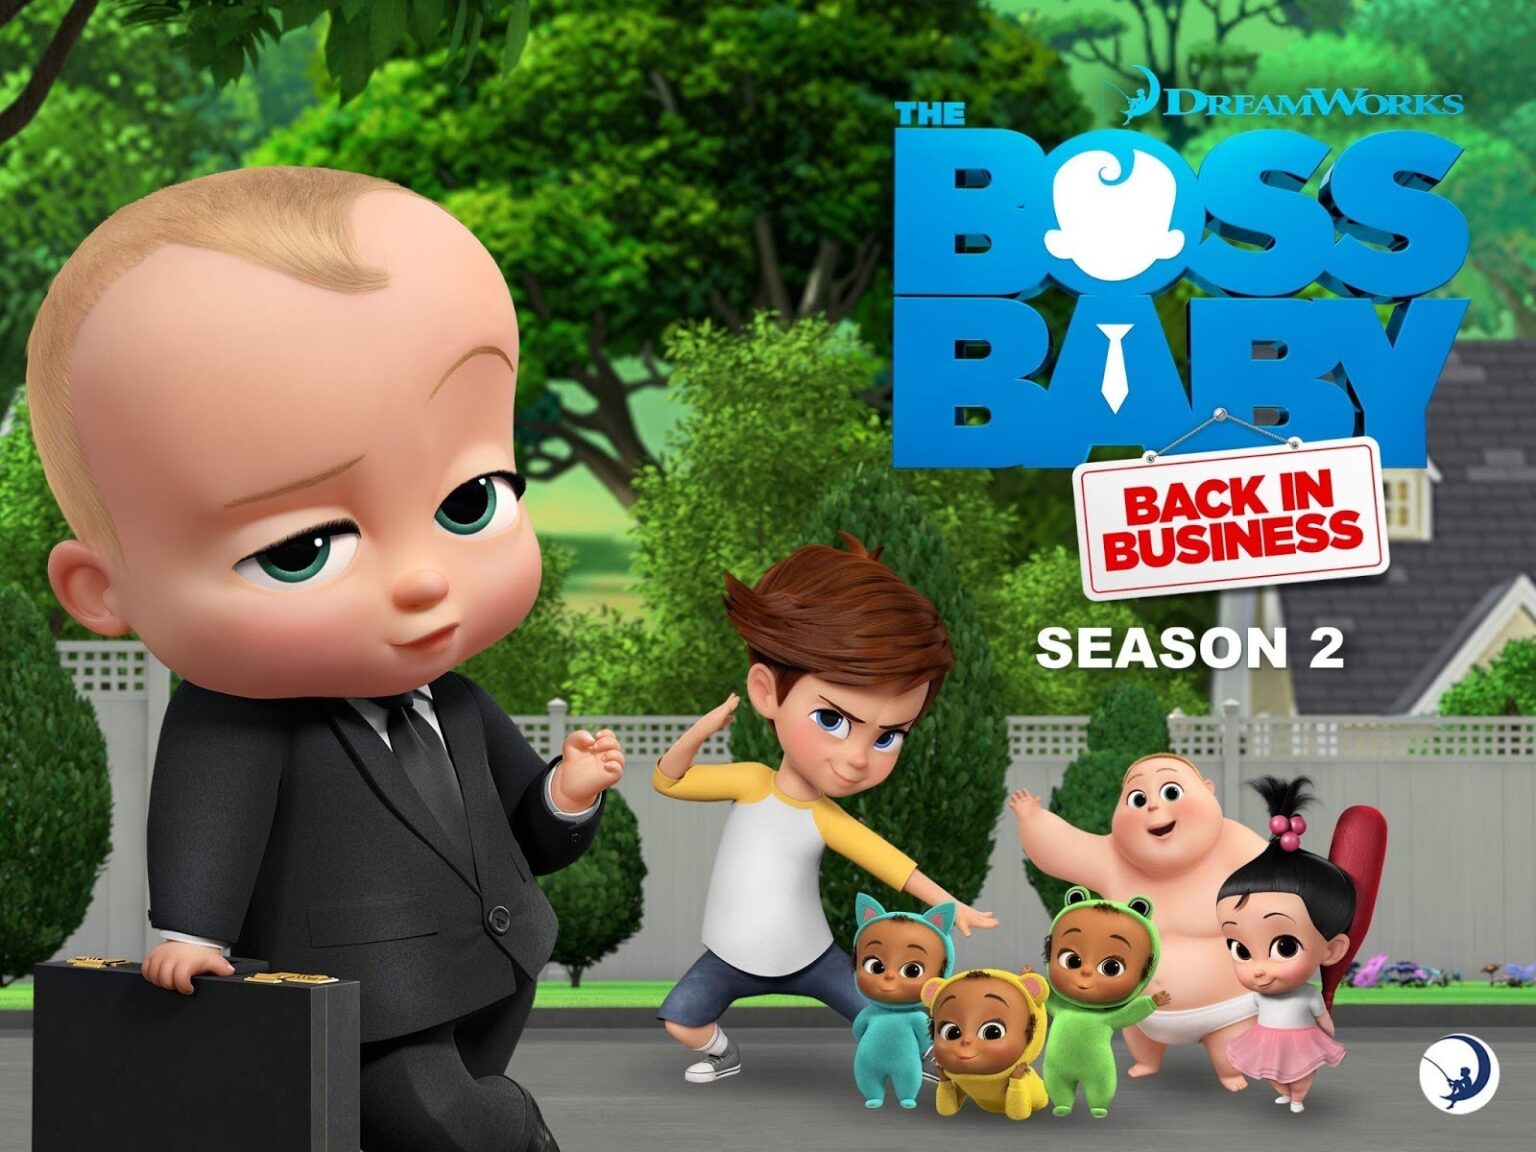 boss baby movie 2